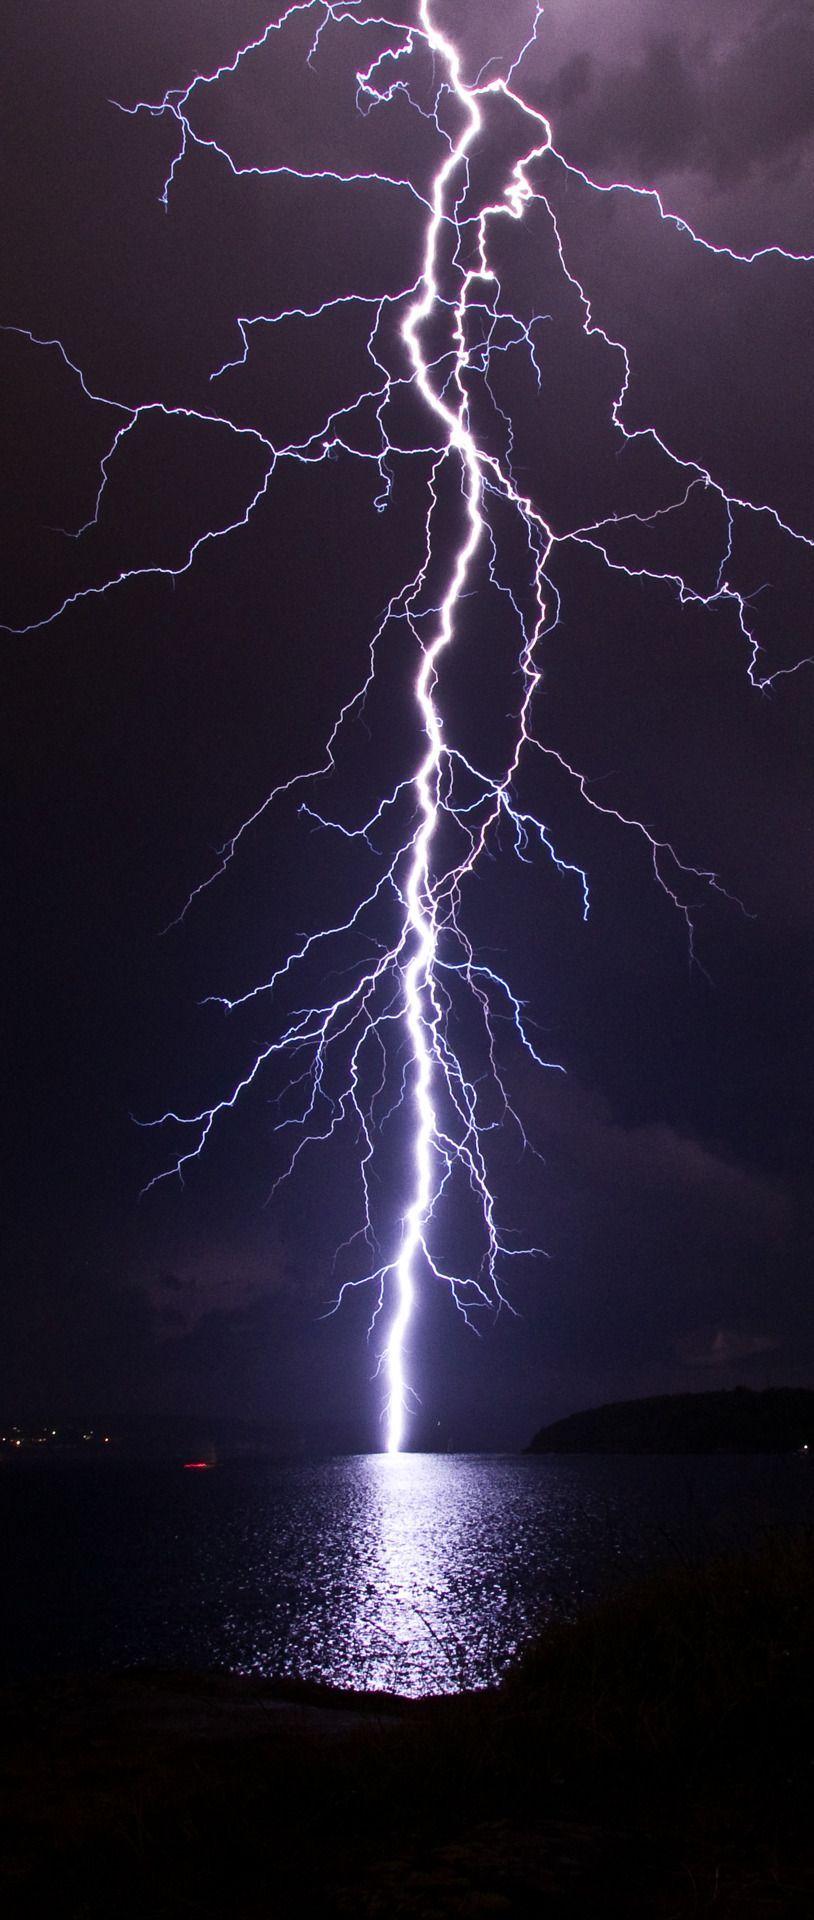 Lightning Strike – Sydney Thunderstorm